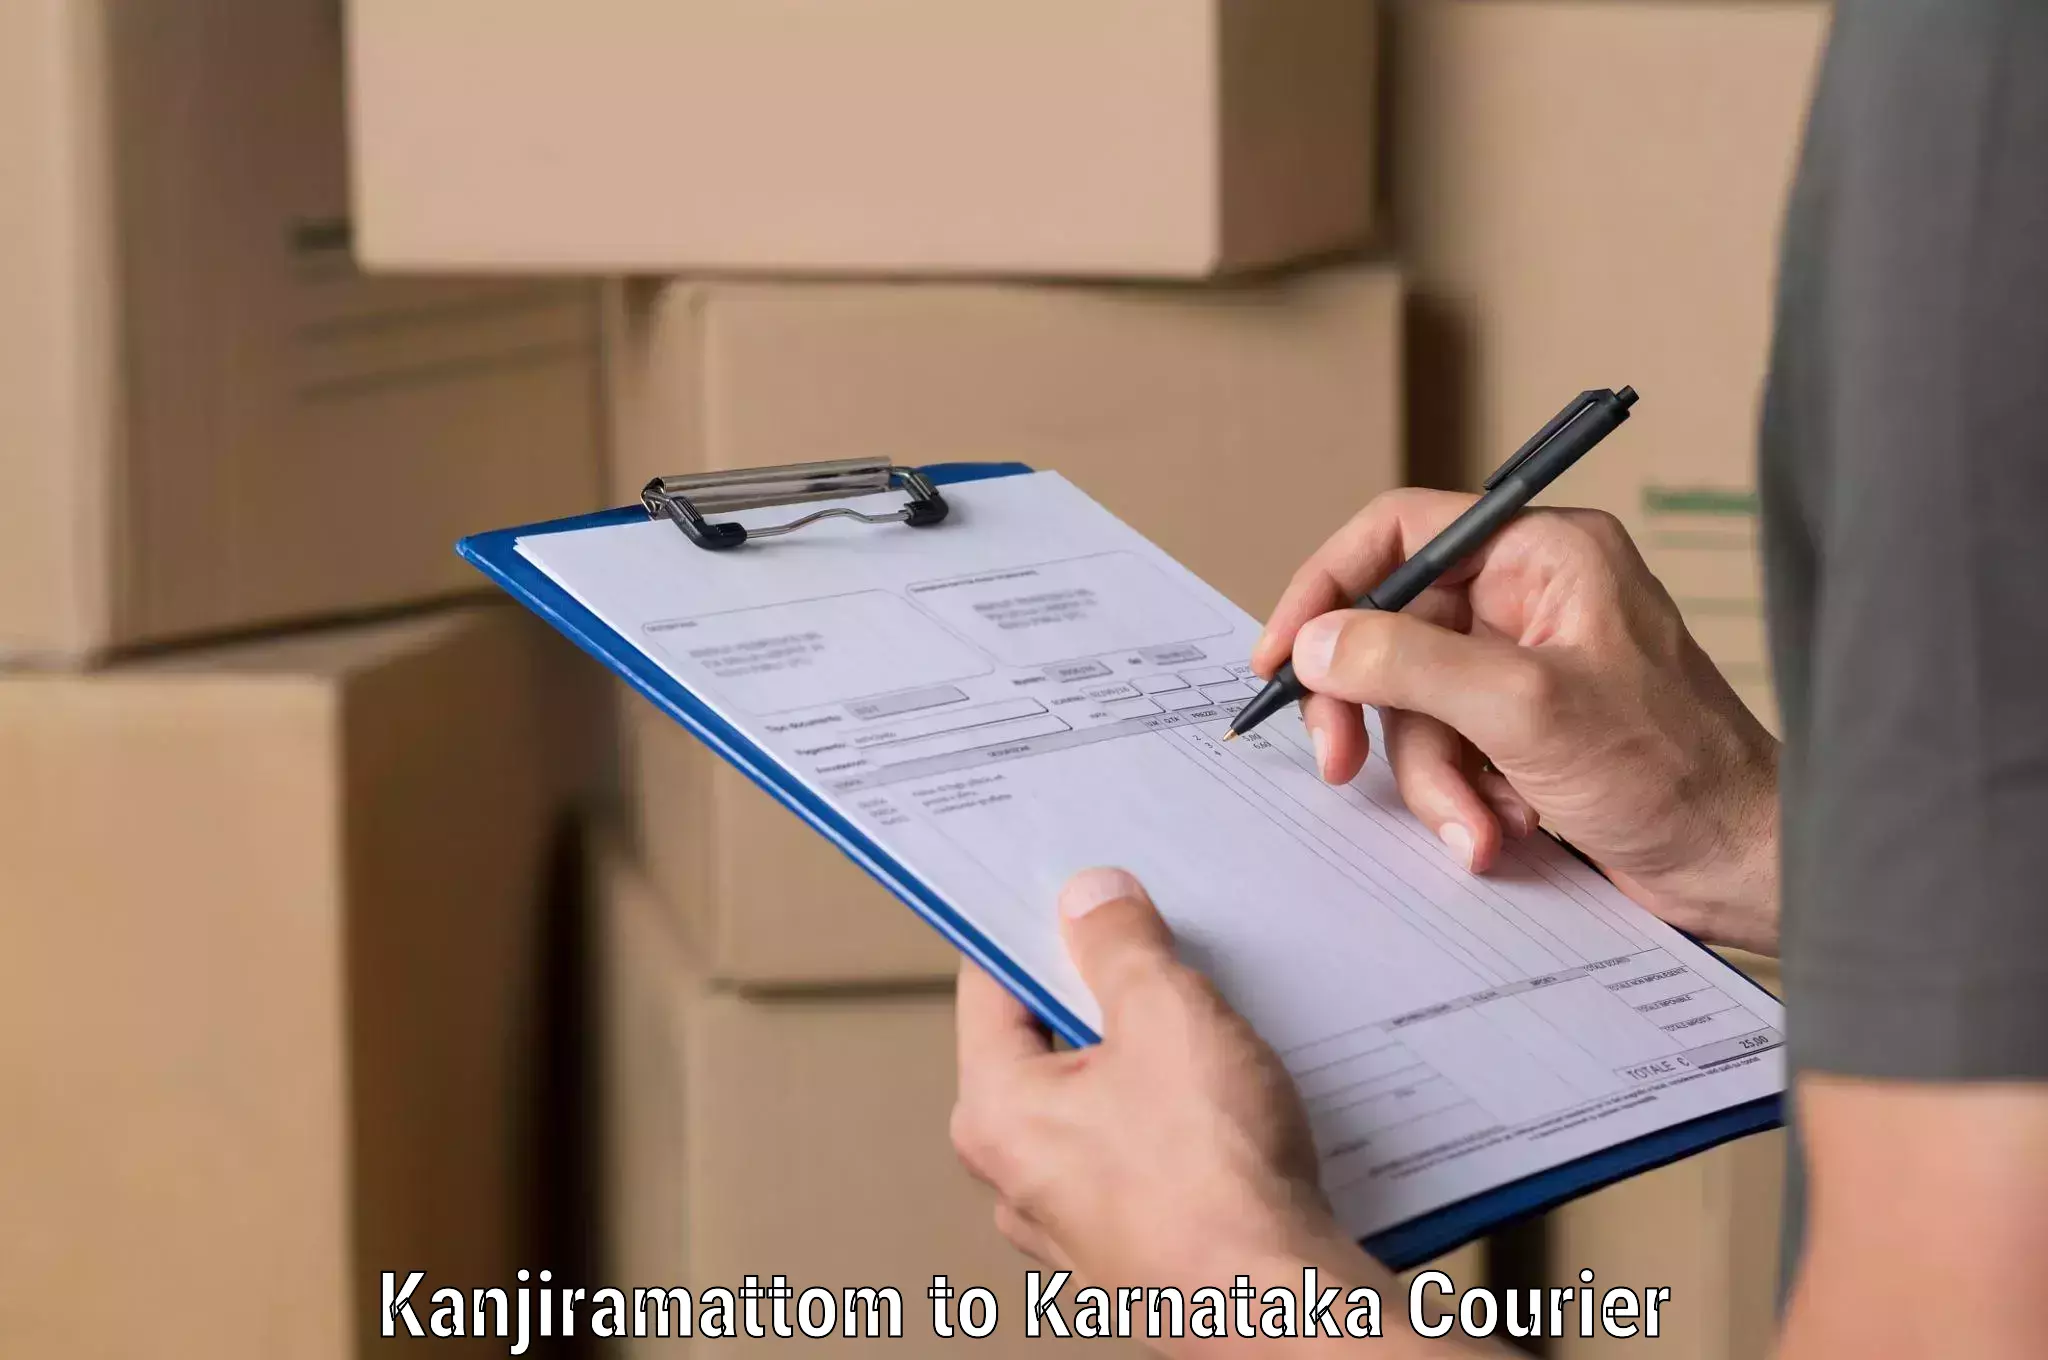 Smart shipping technology Kanjiramattom to Yaragatti